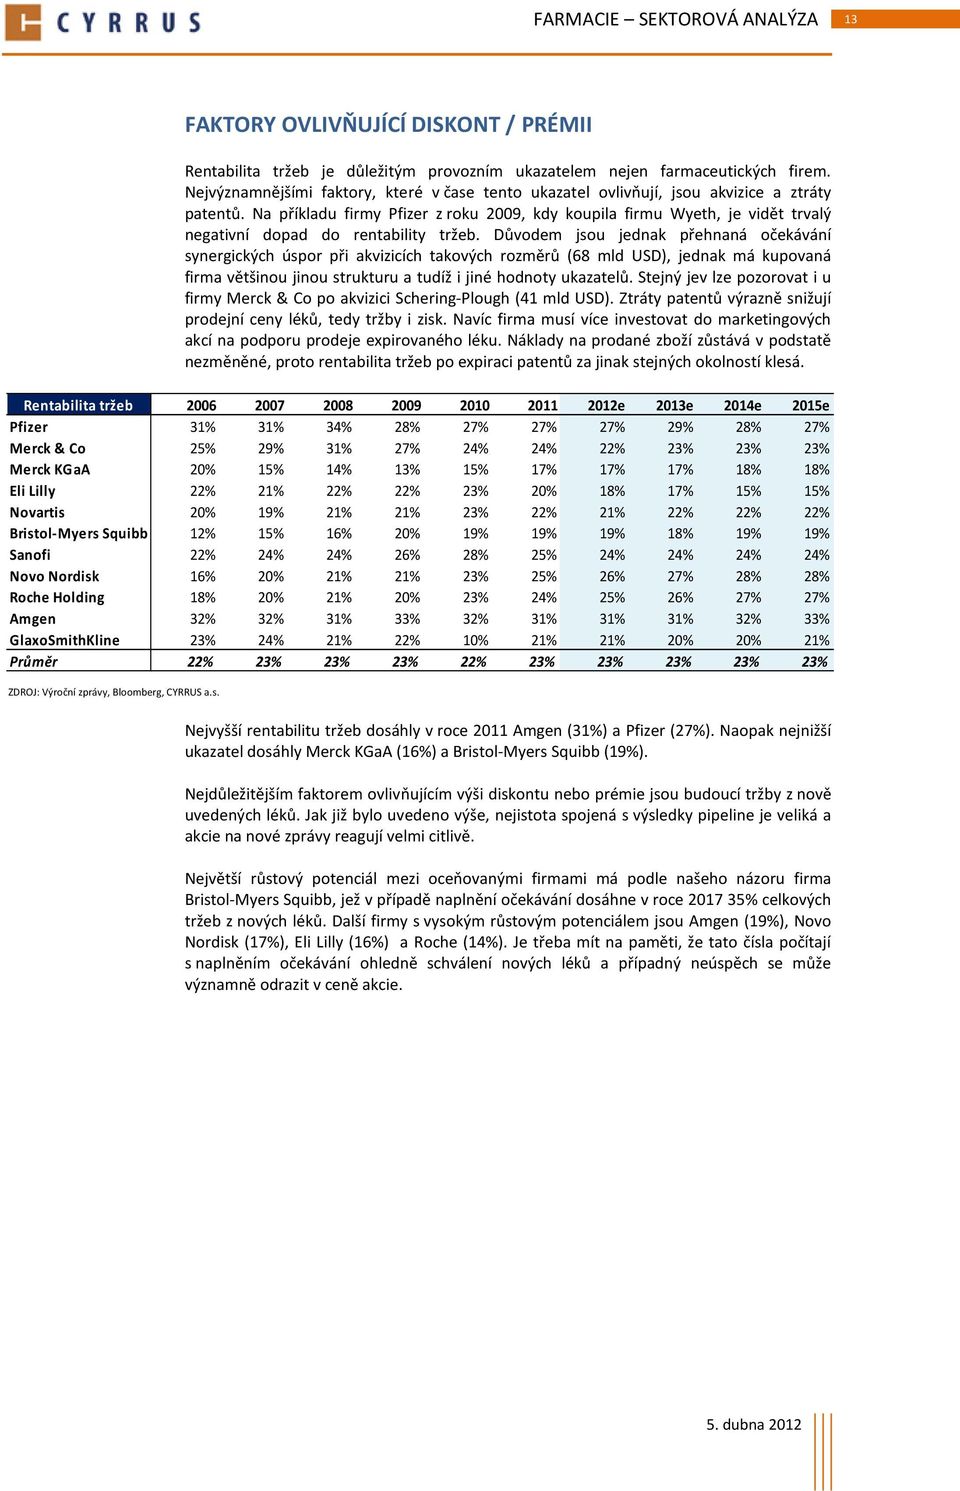 Na příkladu firmy Pfizer z roku 2009, kdy koupila firmu Wyeth, je vidět trvalý negativní dopad do rentability tržeb.